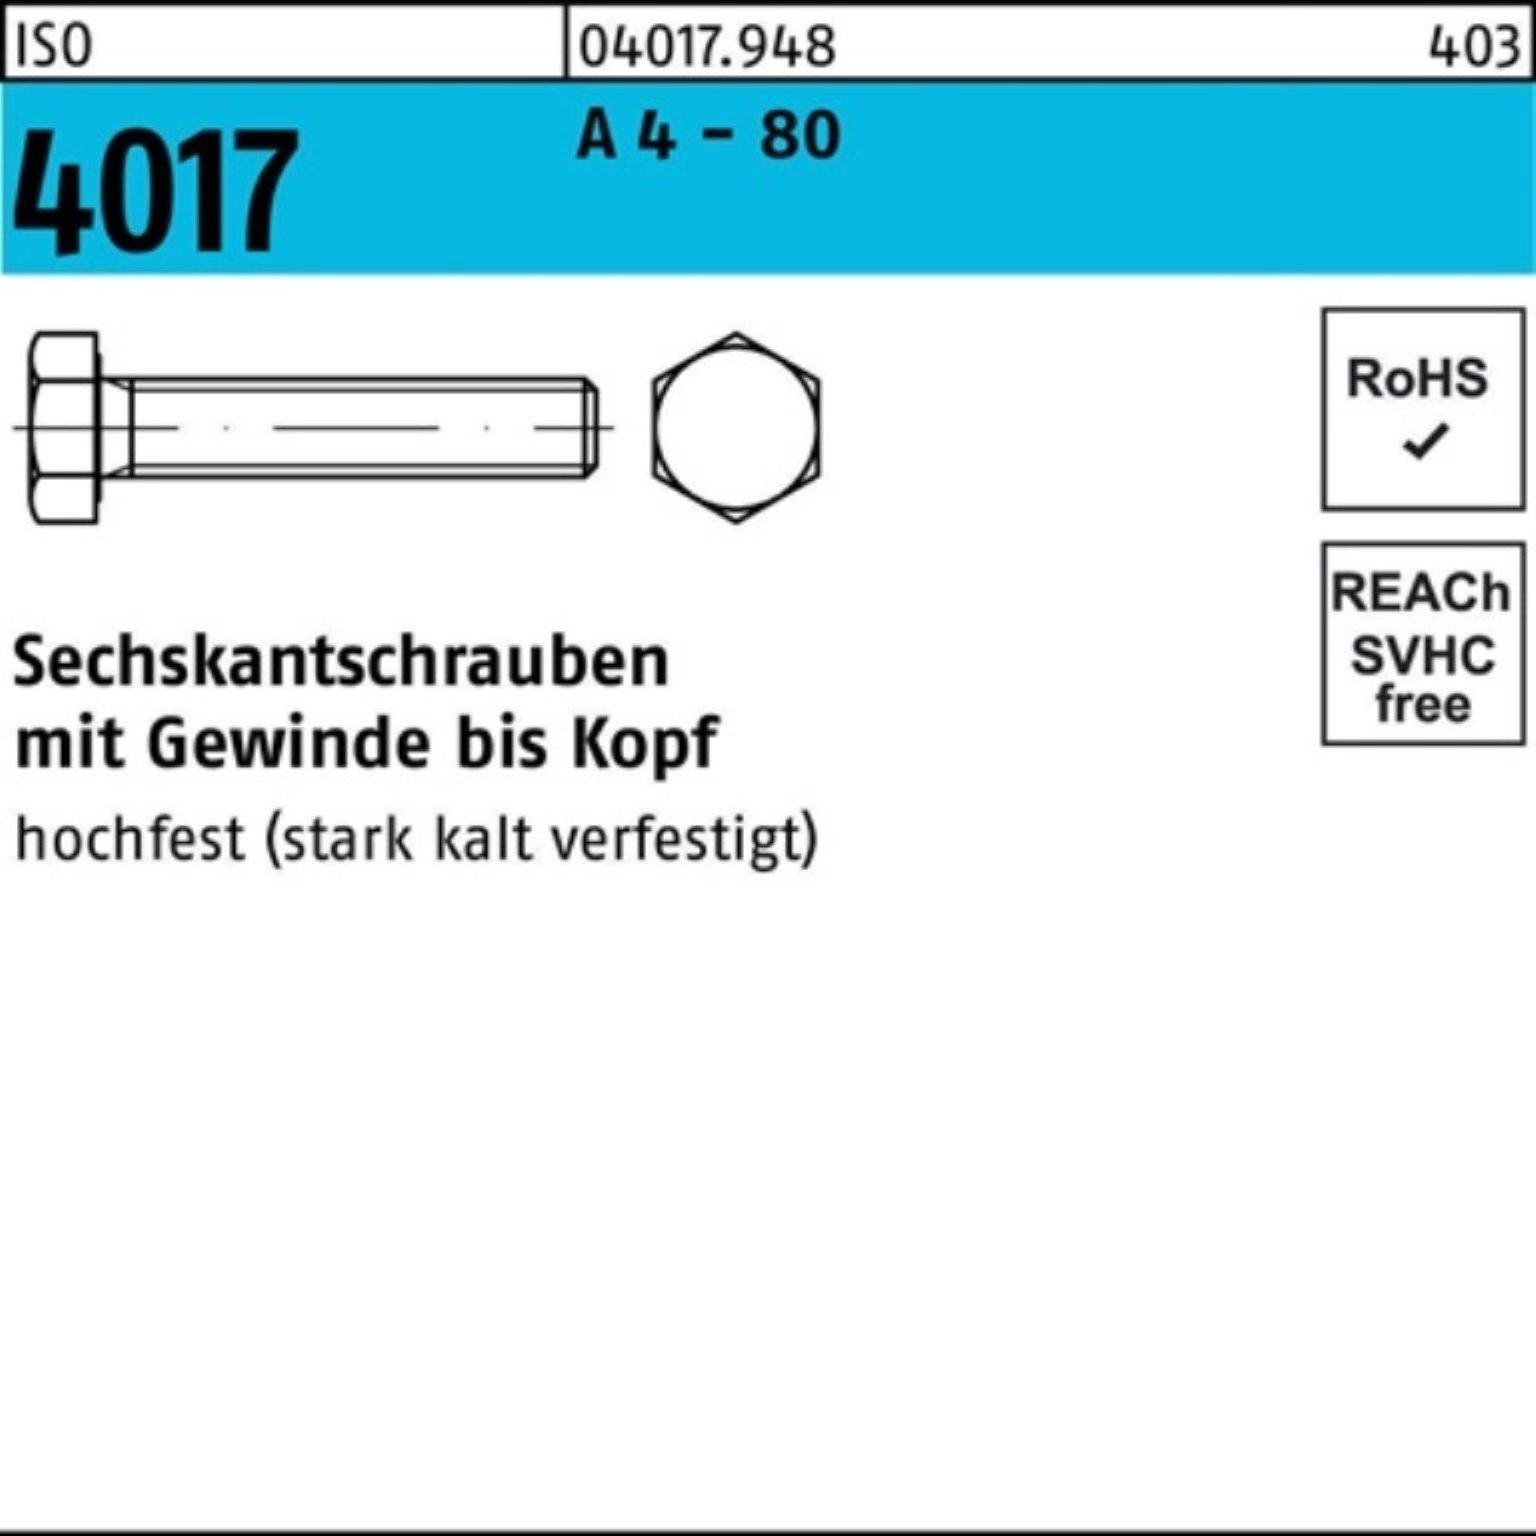 - Bufab 16 Sechskantschraube Stück Sechskantschraube 100er 4017 IS M8x Pack A 4 VG 80 ISO 100